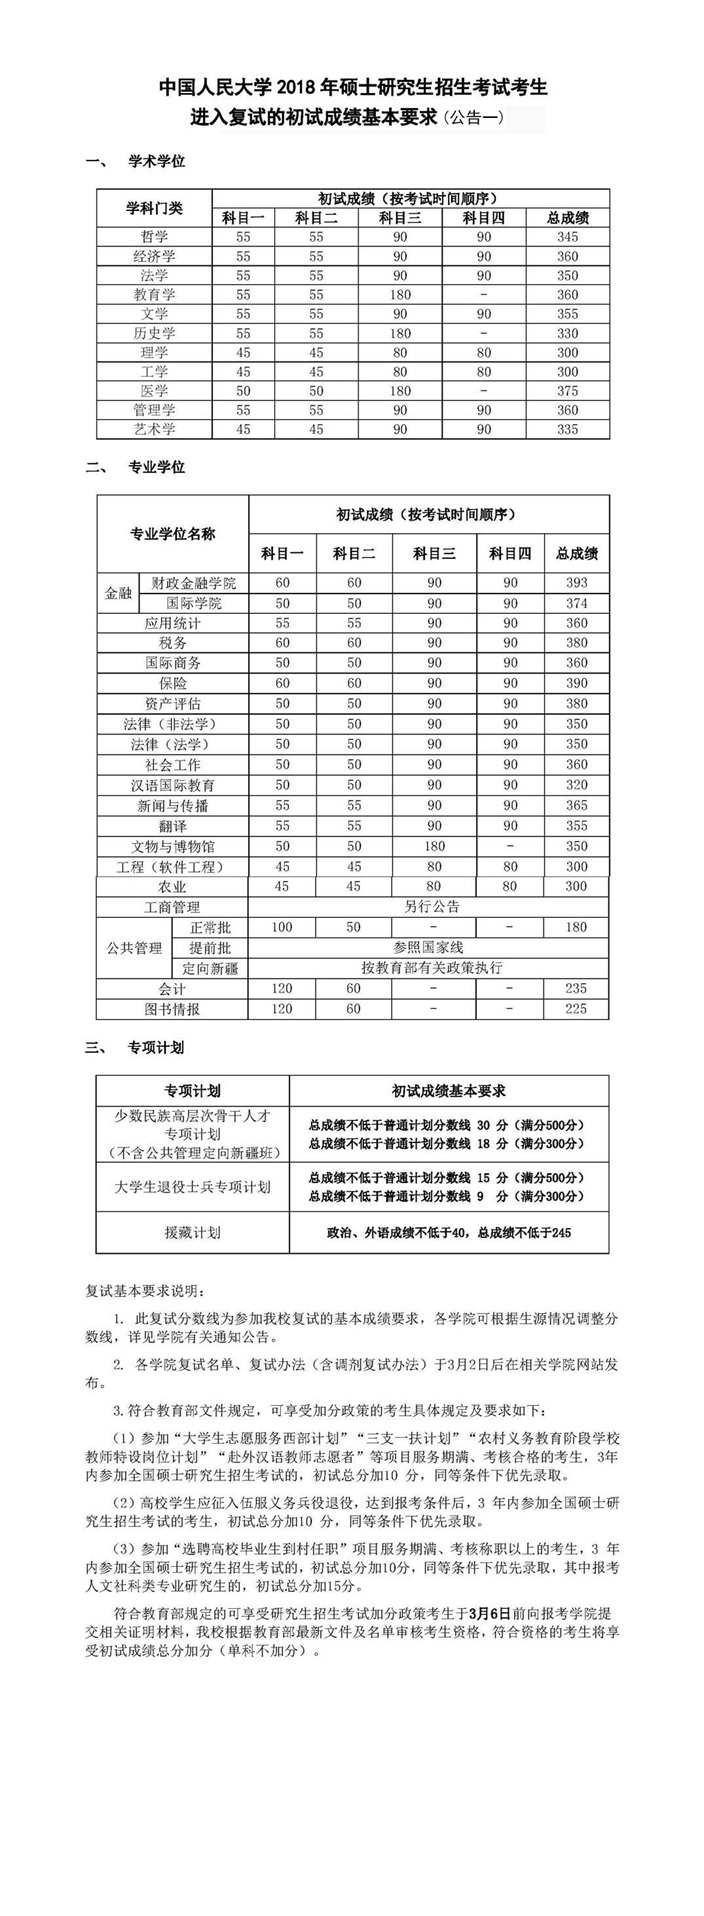 中国人民大学2018年硕士生招生考试进入复试的初试成绩基本要求(公告一)